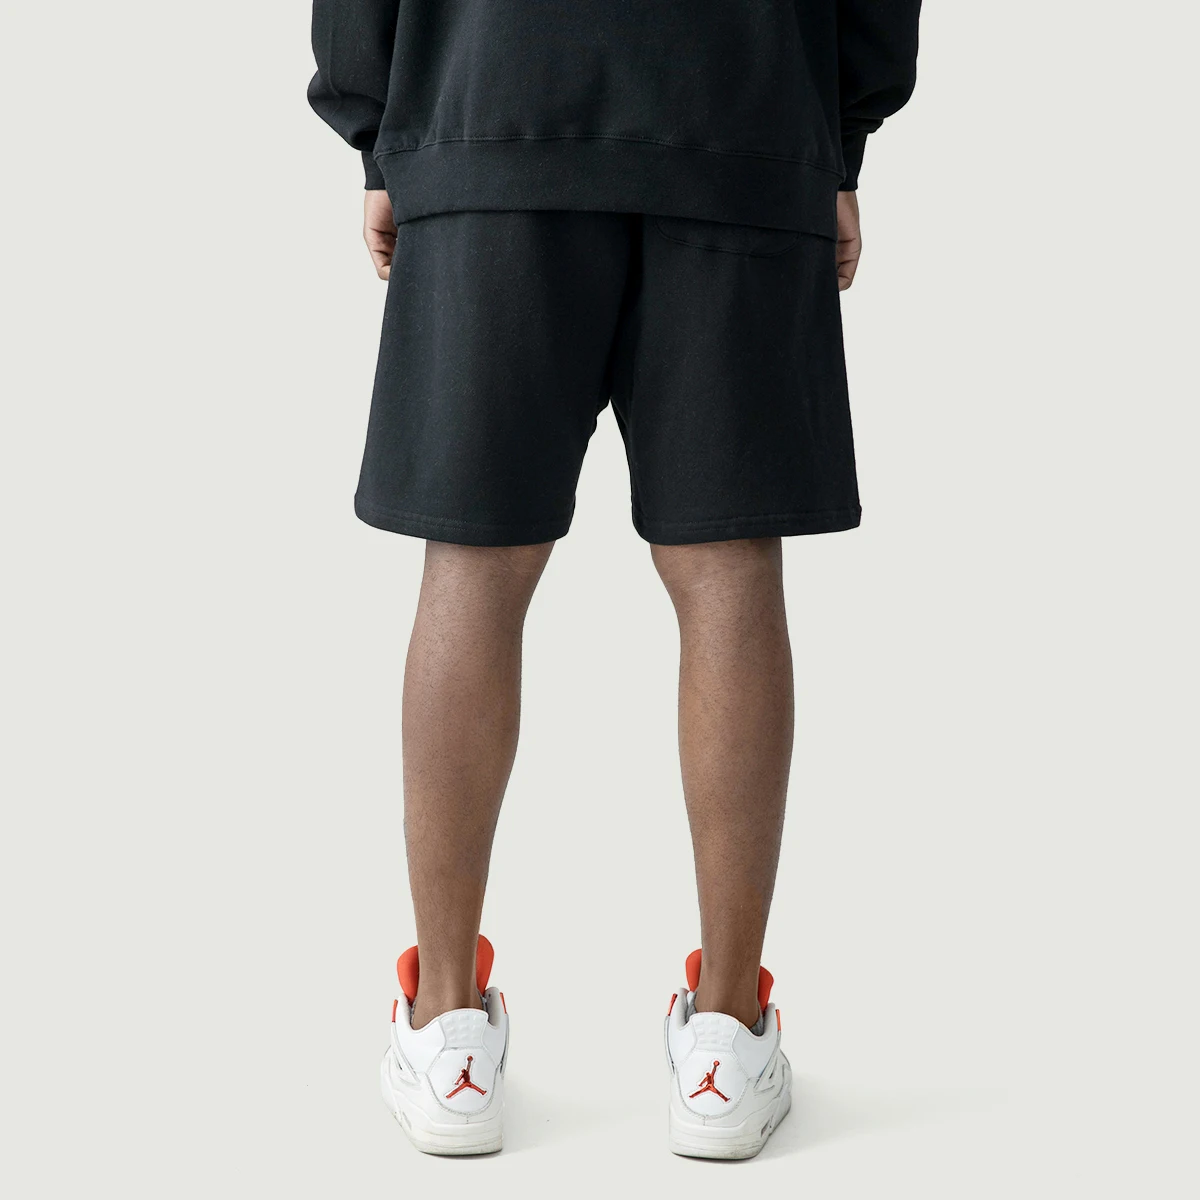 380GSM Unisex Oversized Fleece-lined Shorts-Shorts-Men's clothing ...